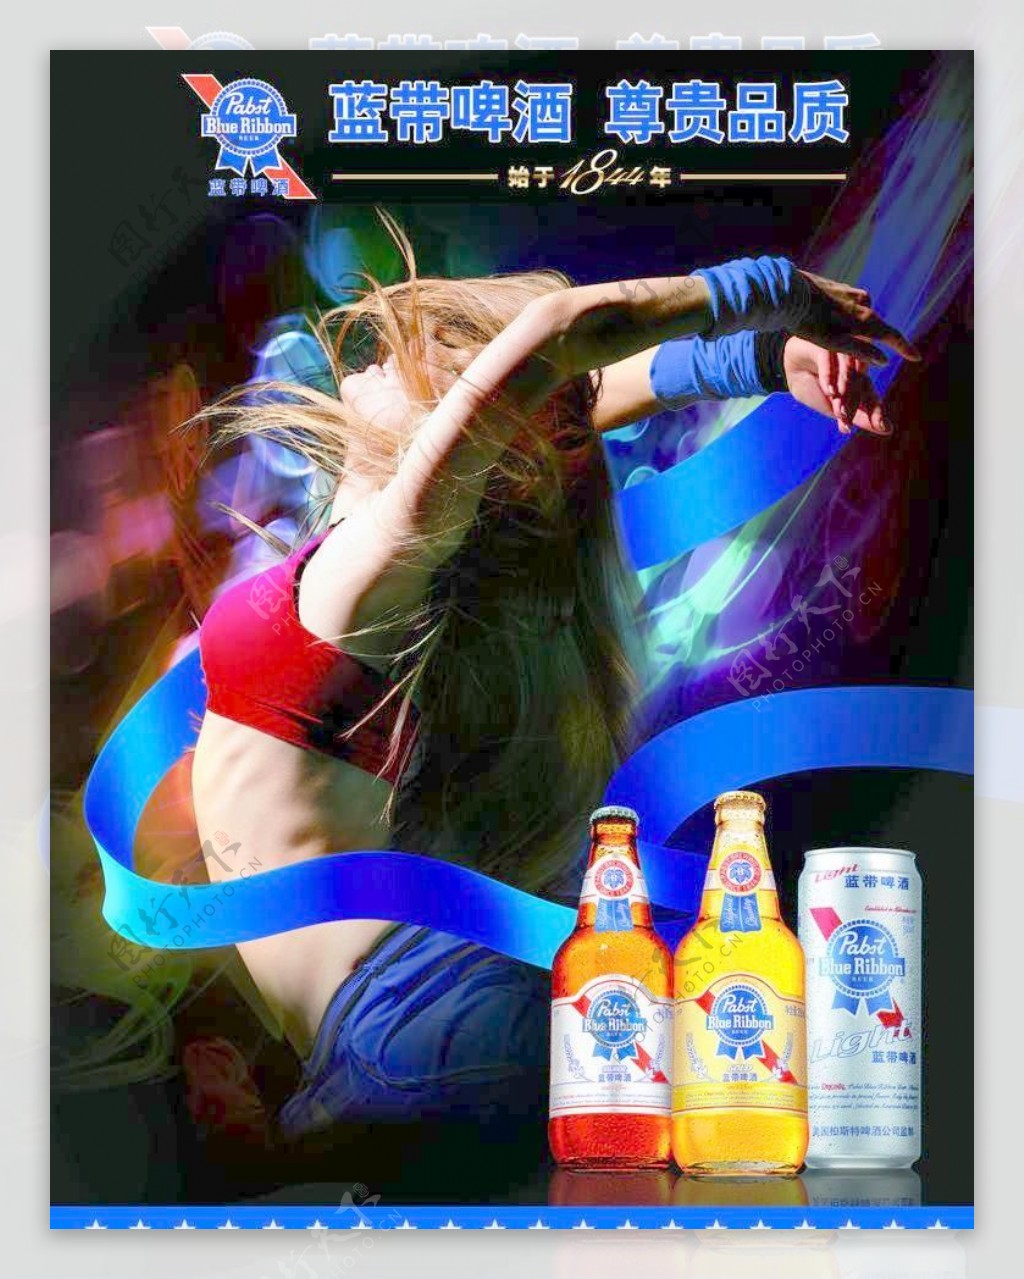 蓝带啤酒海报图片